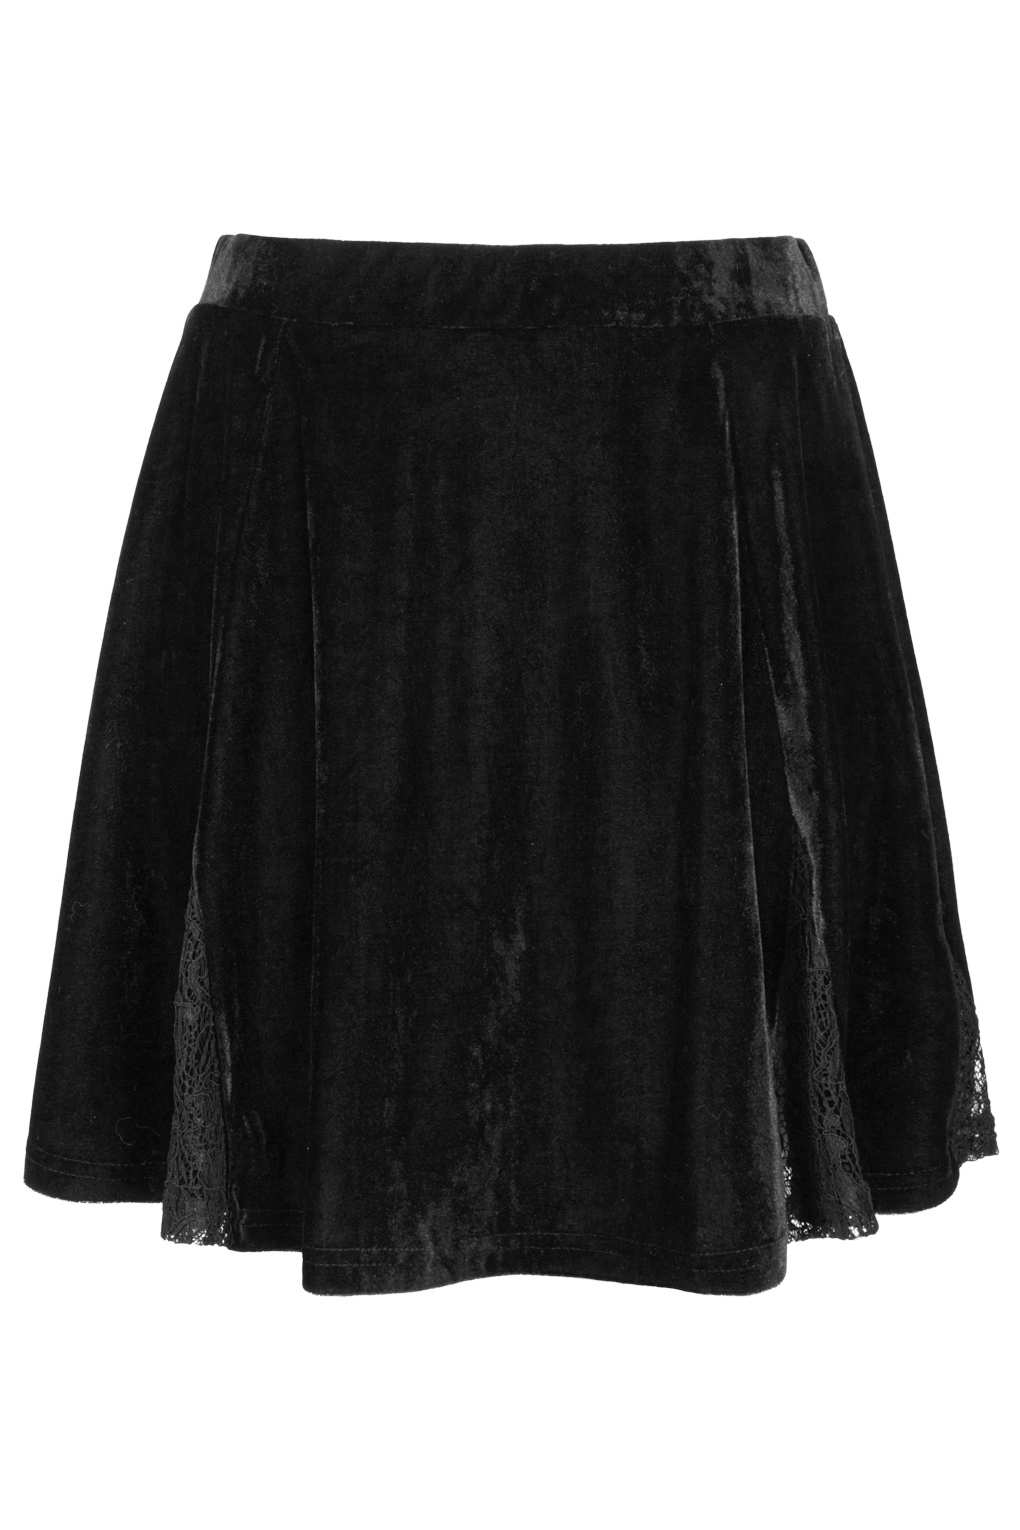 Lyst - Topshop Lace Velvet Skater Skirt in Black